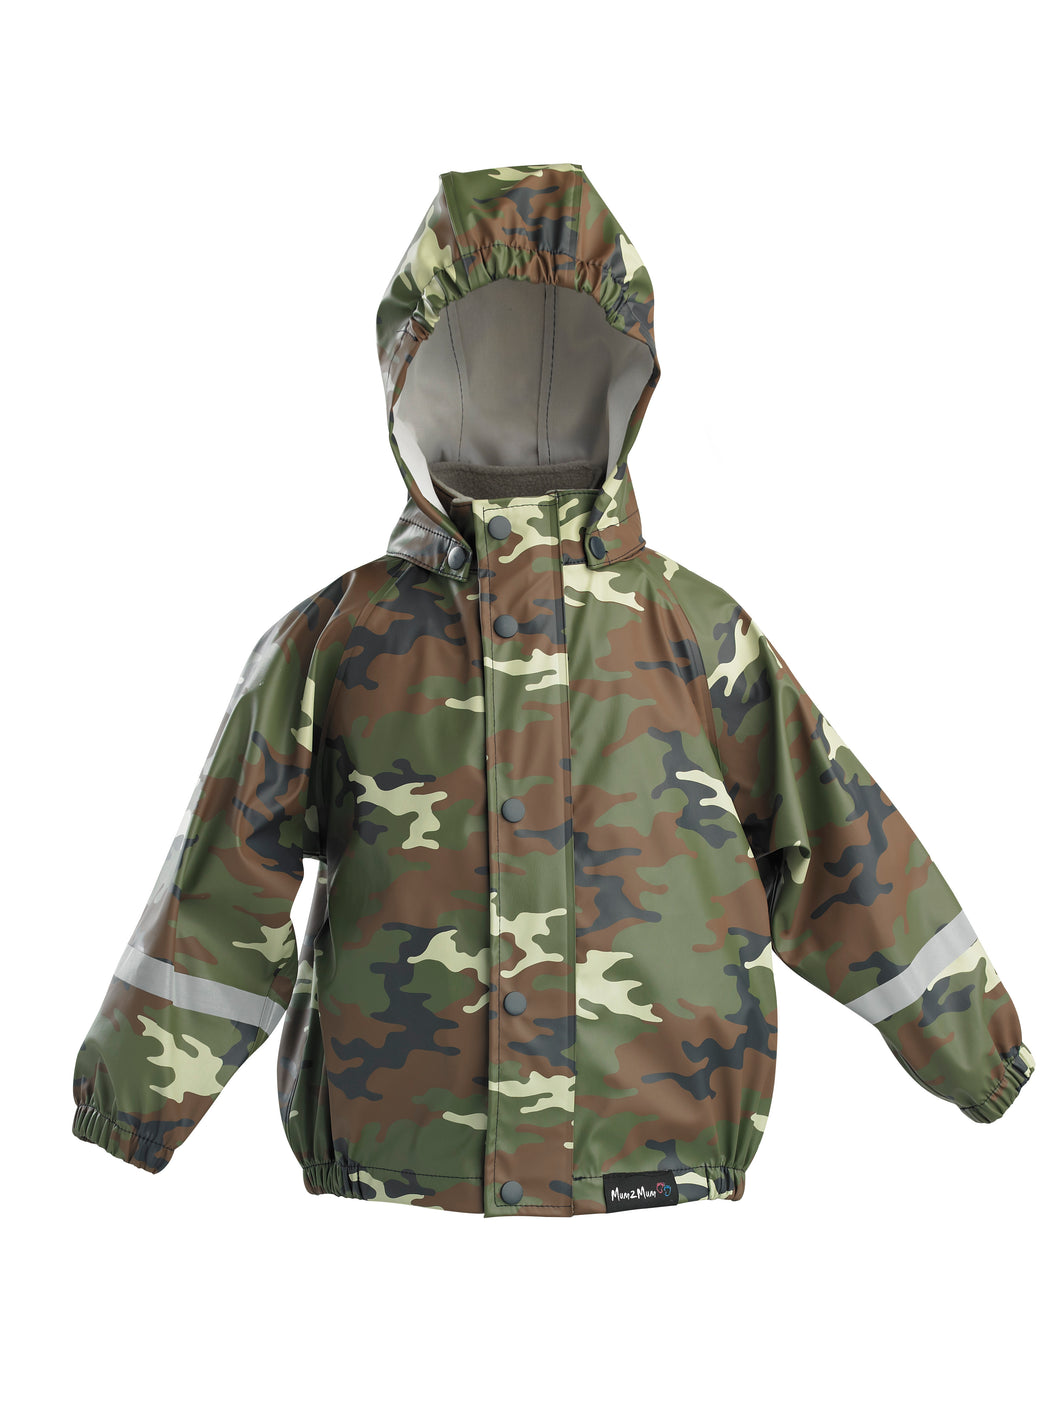 Mum2mum Rainwear Jacket - Camo - Size 1, 2, 3 years